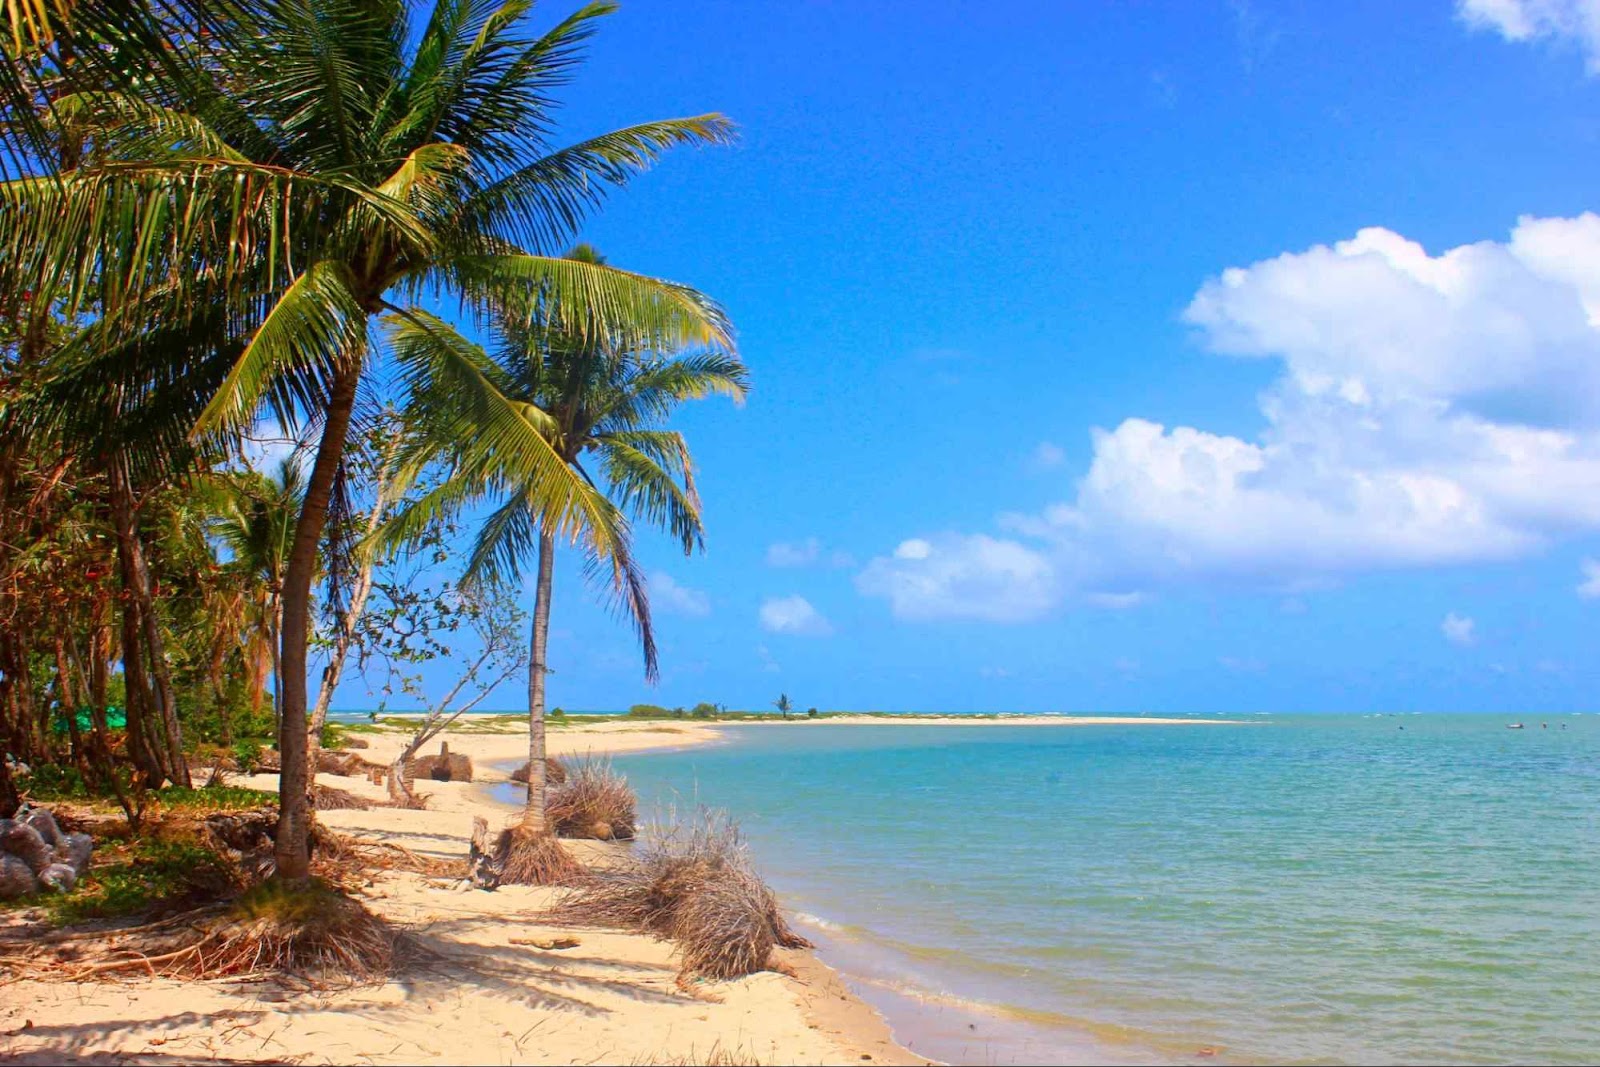 Trecho da praia na Ilha da Coroa do Avião, em Itamaracá, Região Metropolitana do Recife. O mar azul se encontra com os coqueirais situados na areia dourada.
